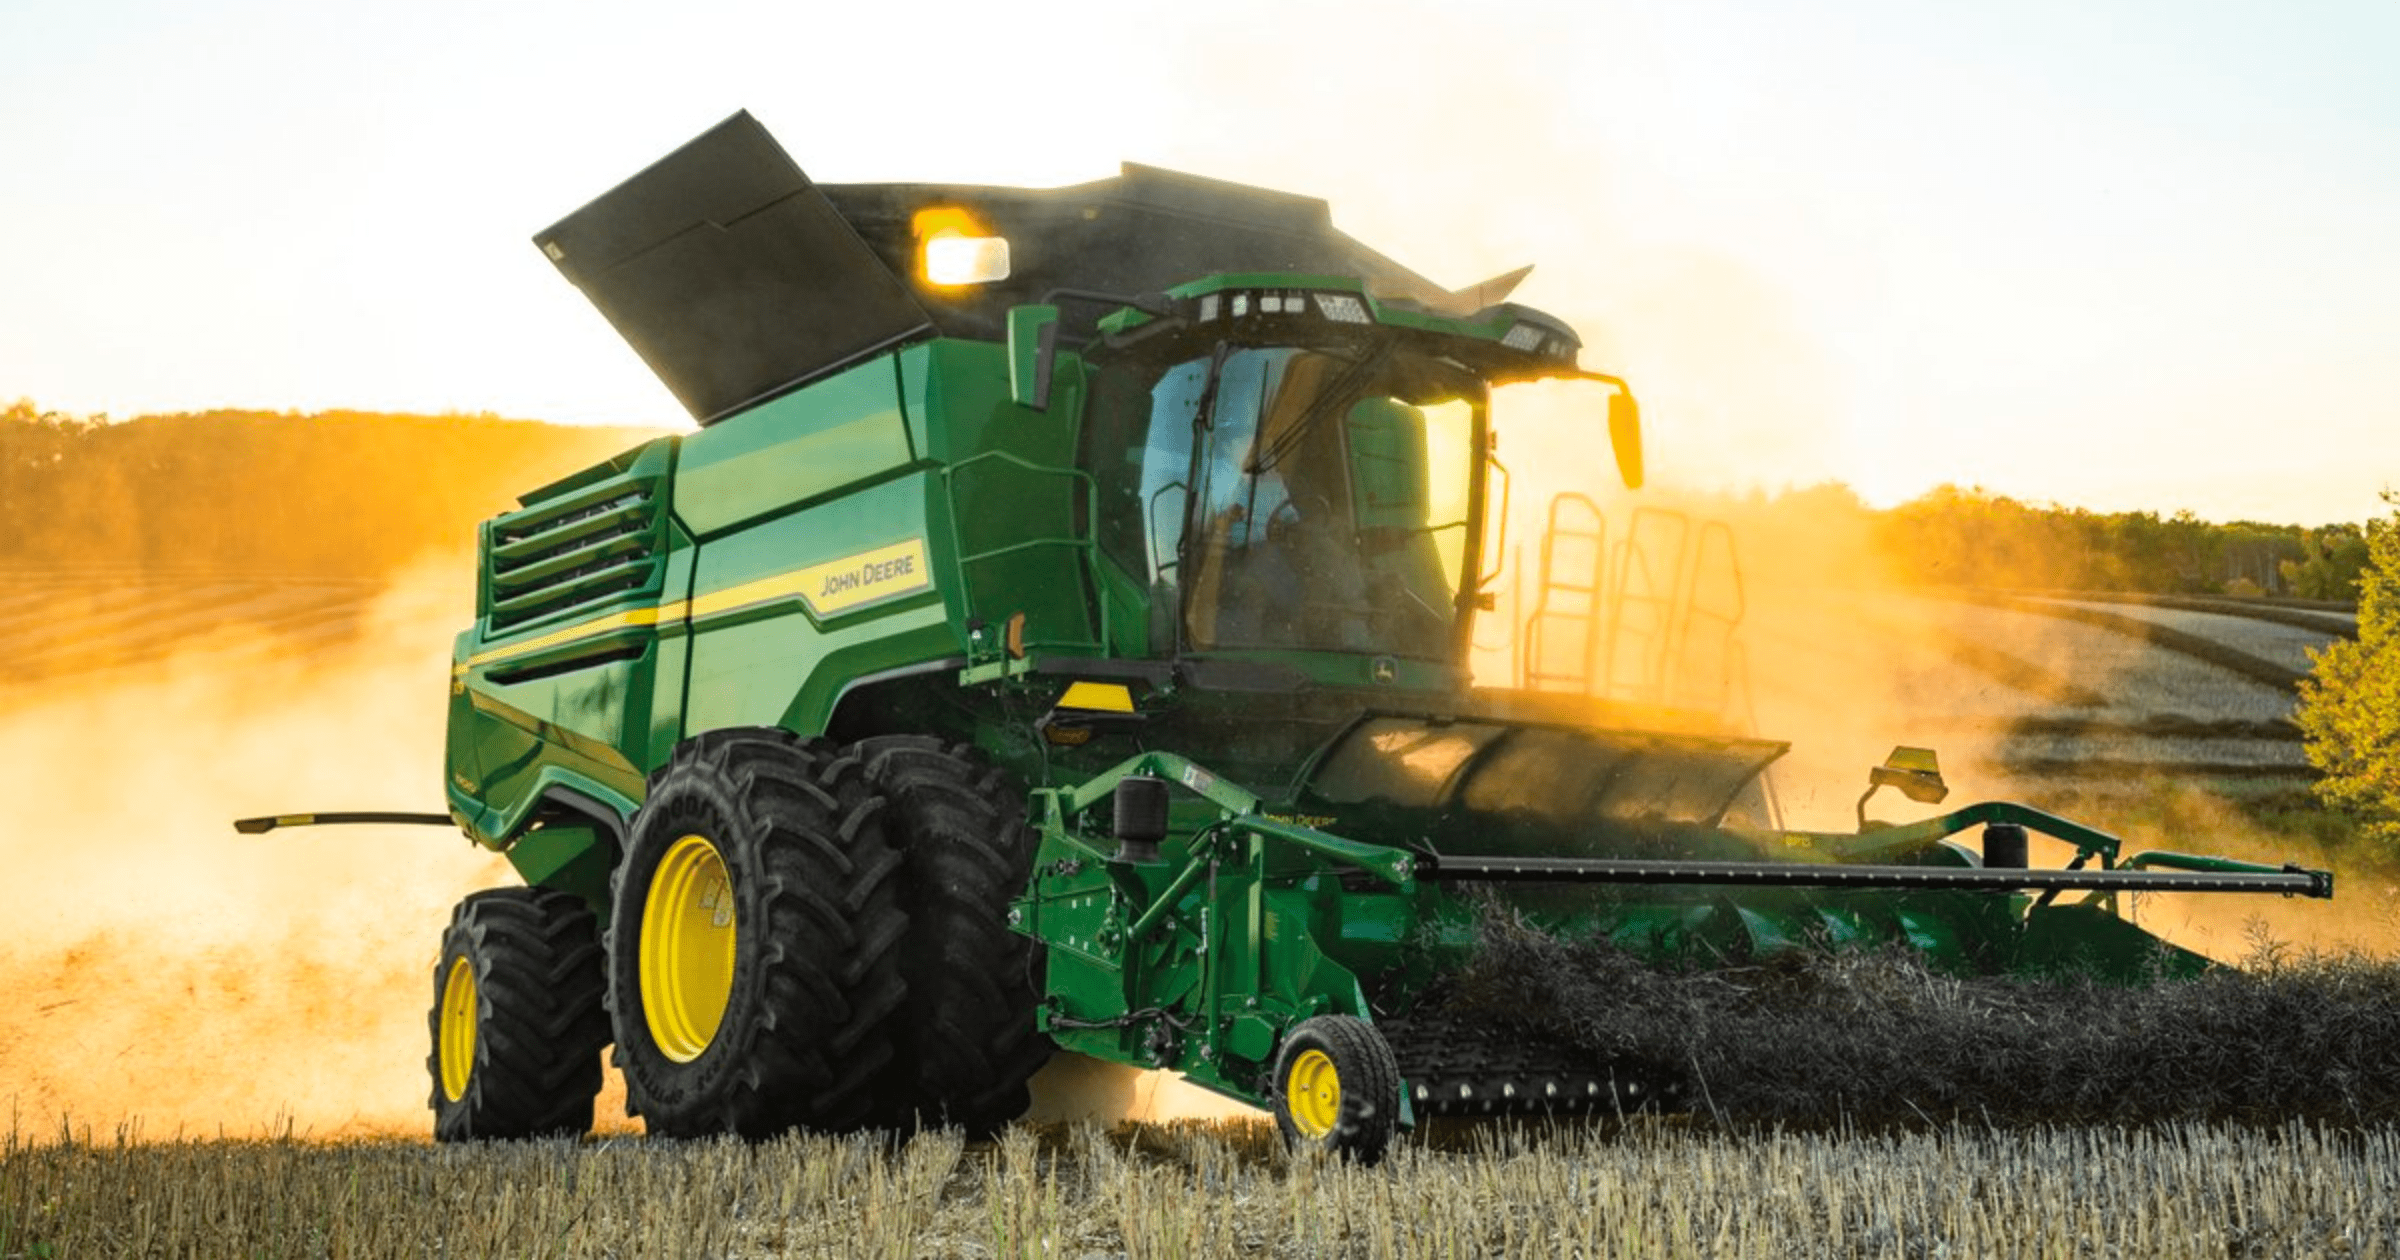 Американская John Deere выделила $50 млн на обновление сельхозтехники в КР через льготное кредитование